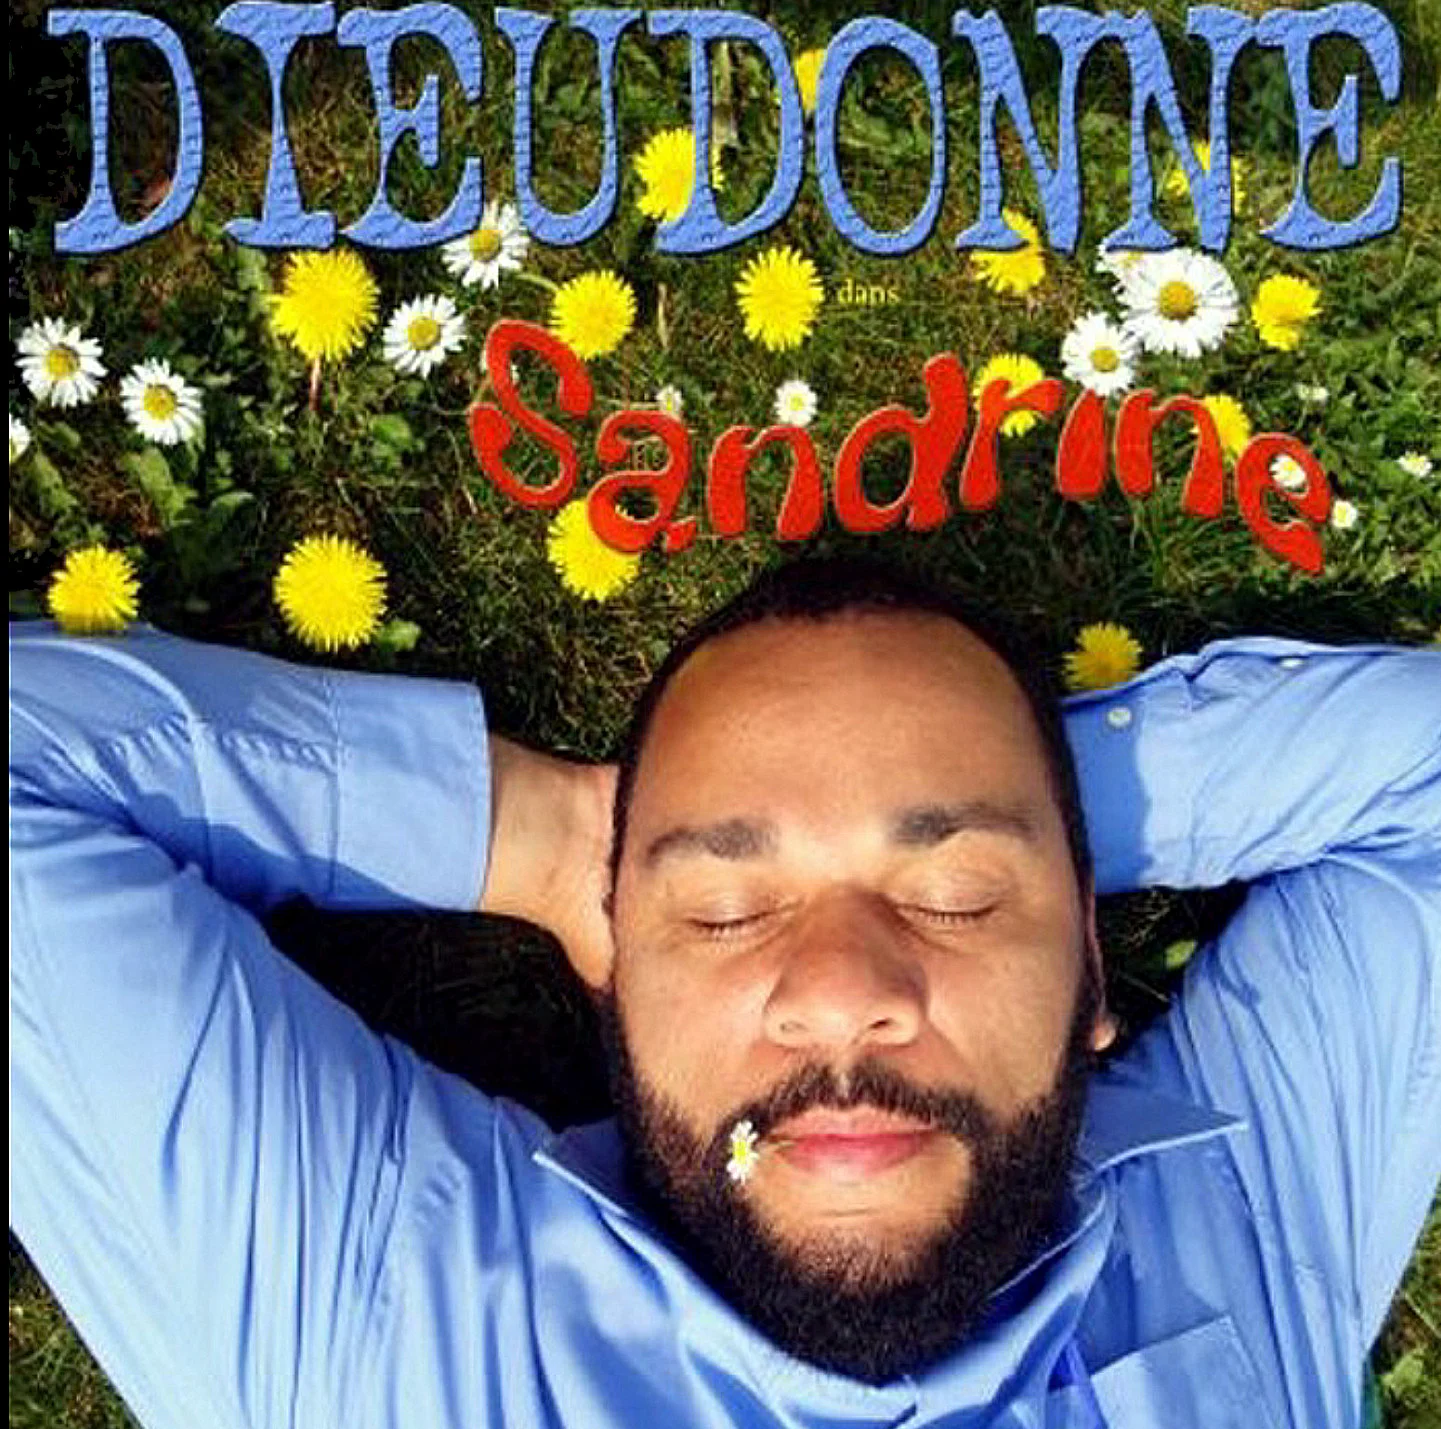 Dieudonné – Sandrine (Spectacle complet)